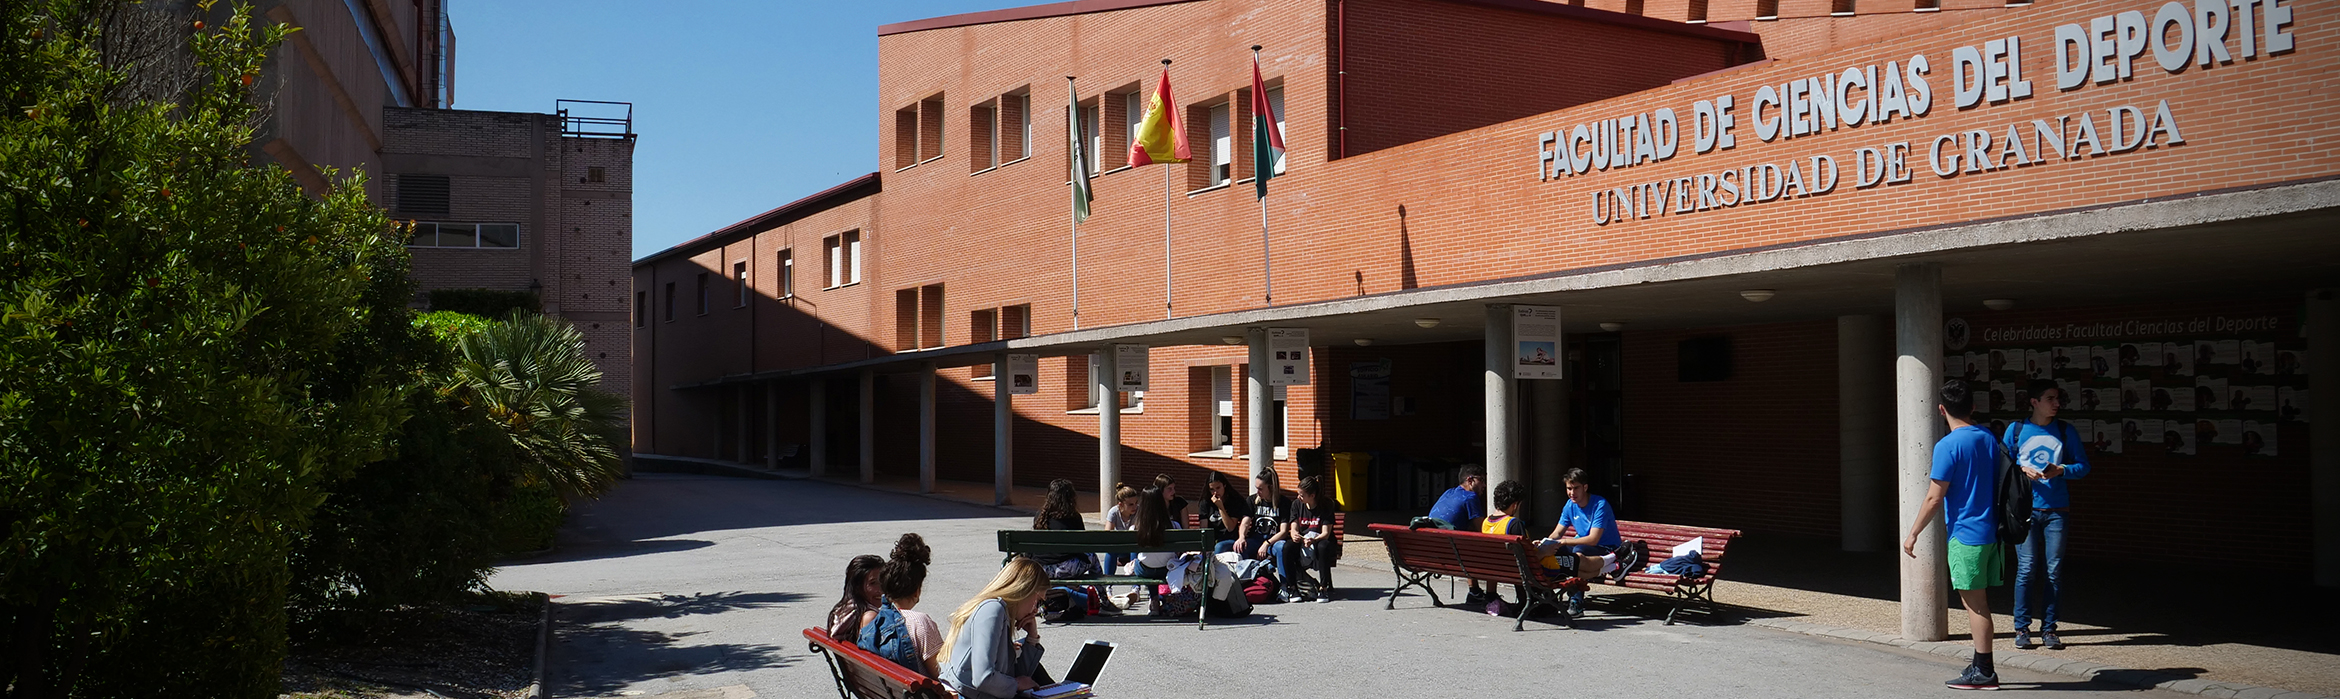 Vista de la entrada de la Facultad de Ciencias del Deporte, entorno abierto con bancos y estudiantes